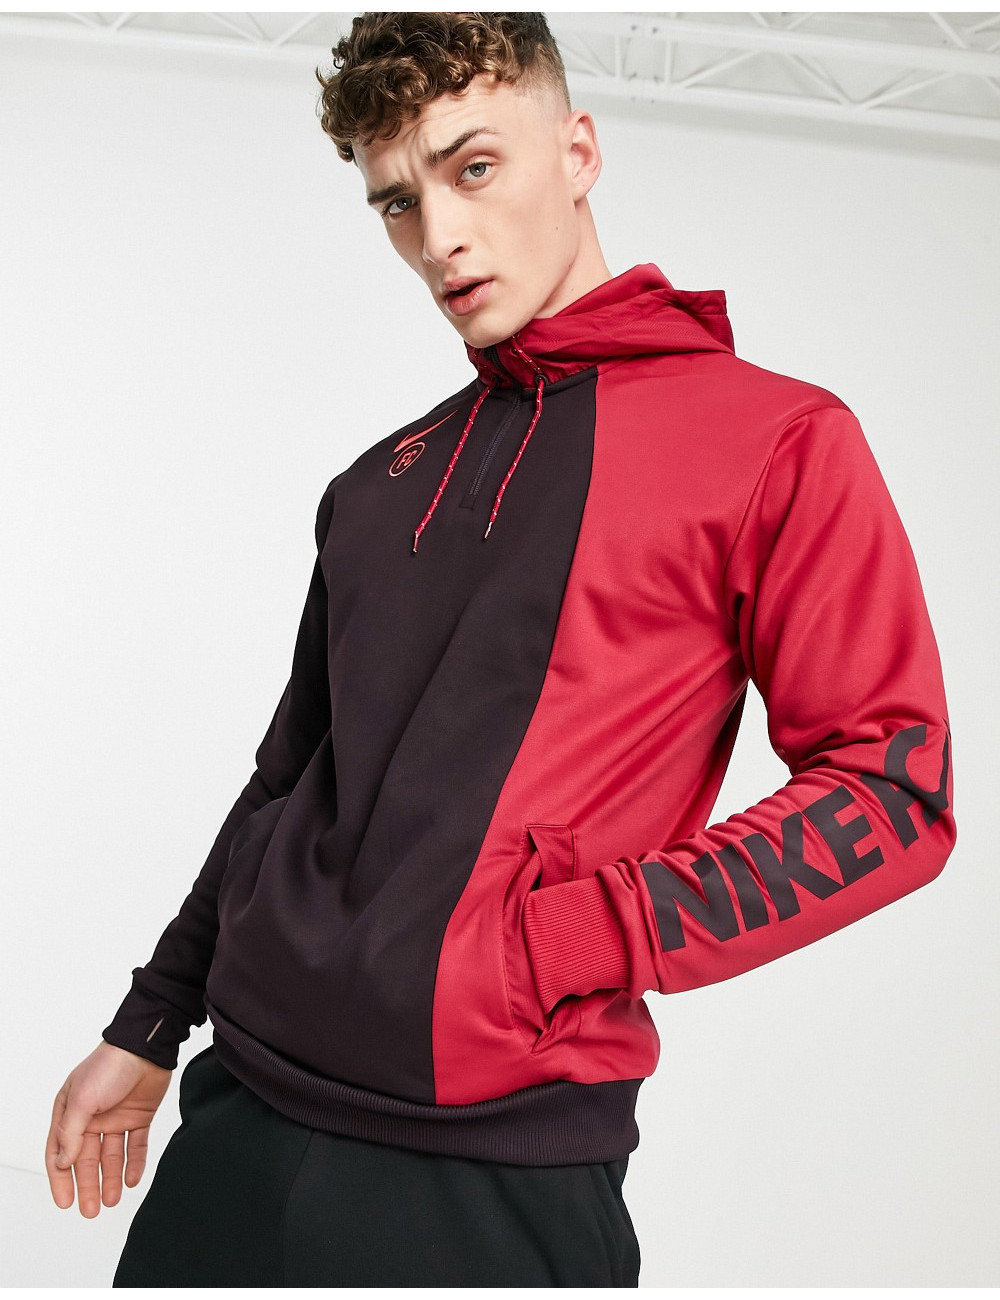 Nike Football hoodie in red